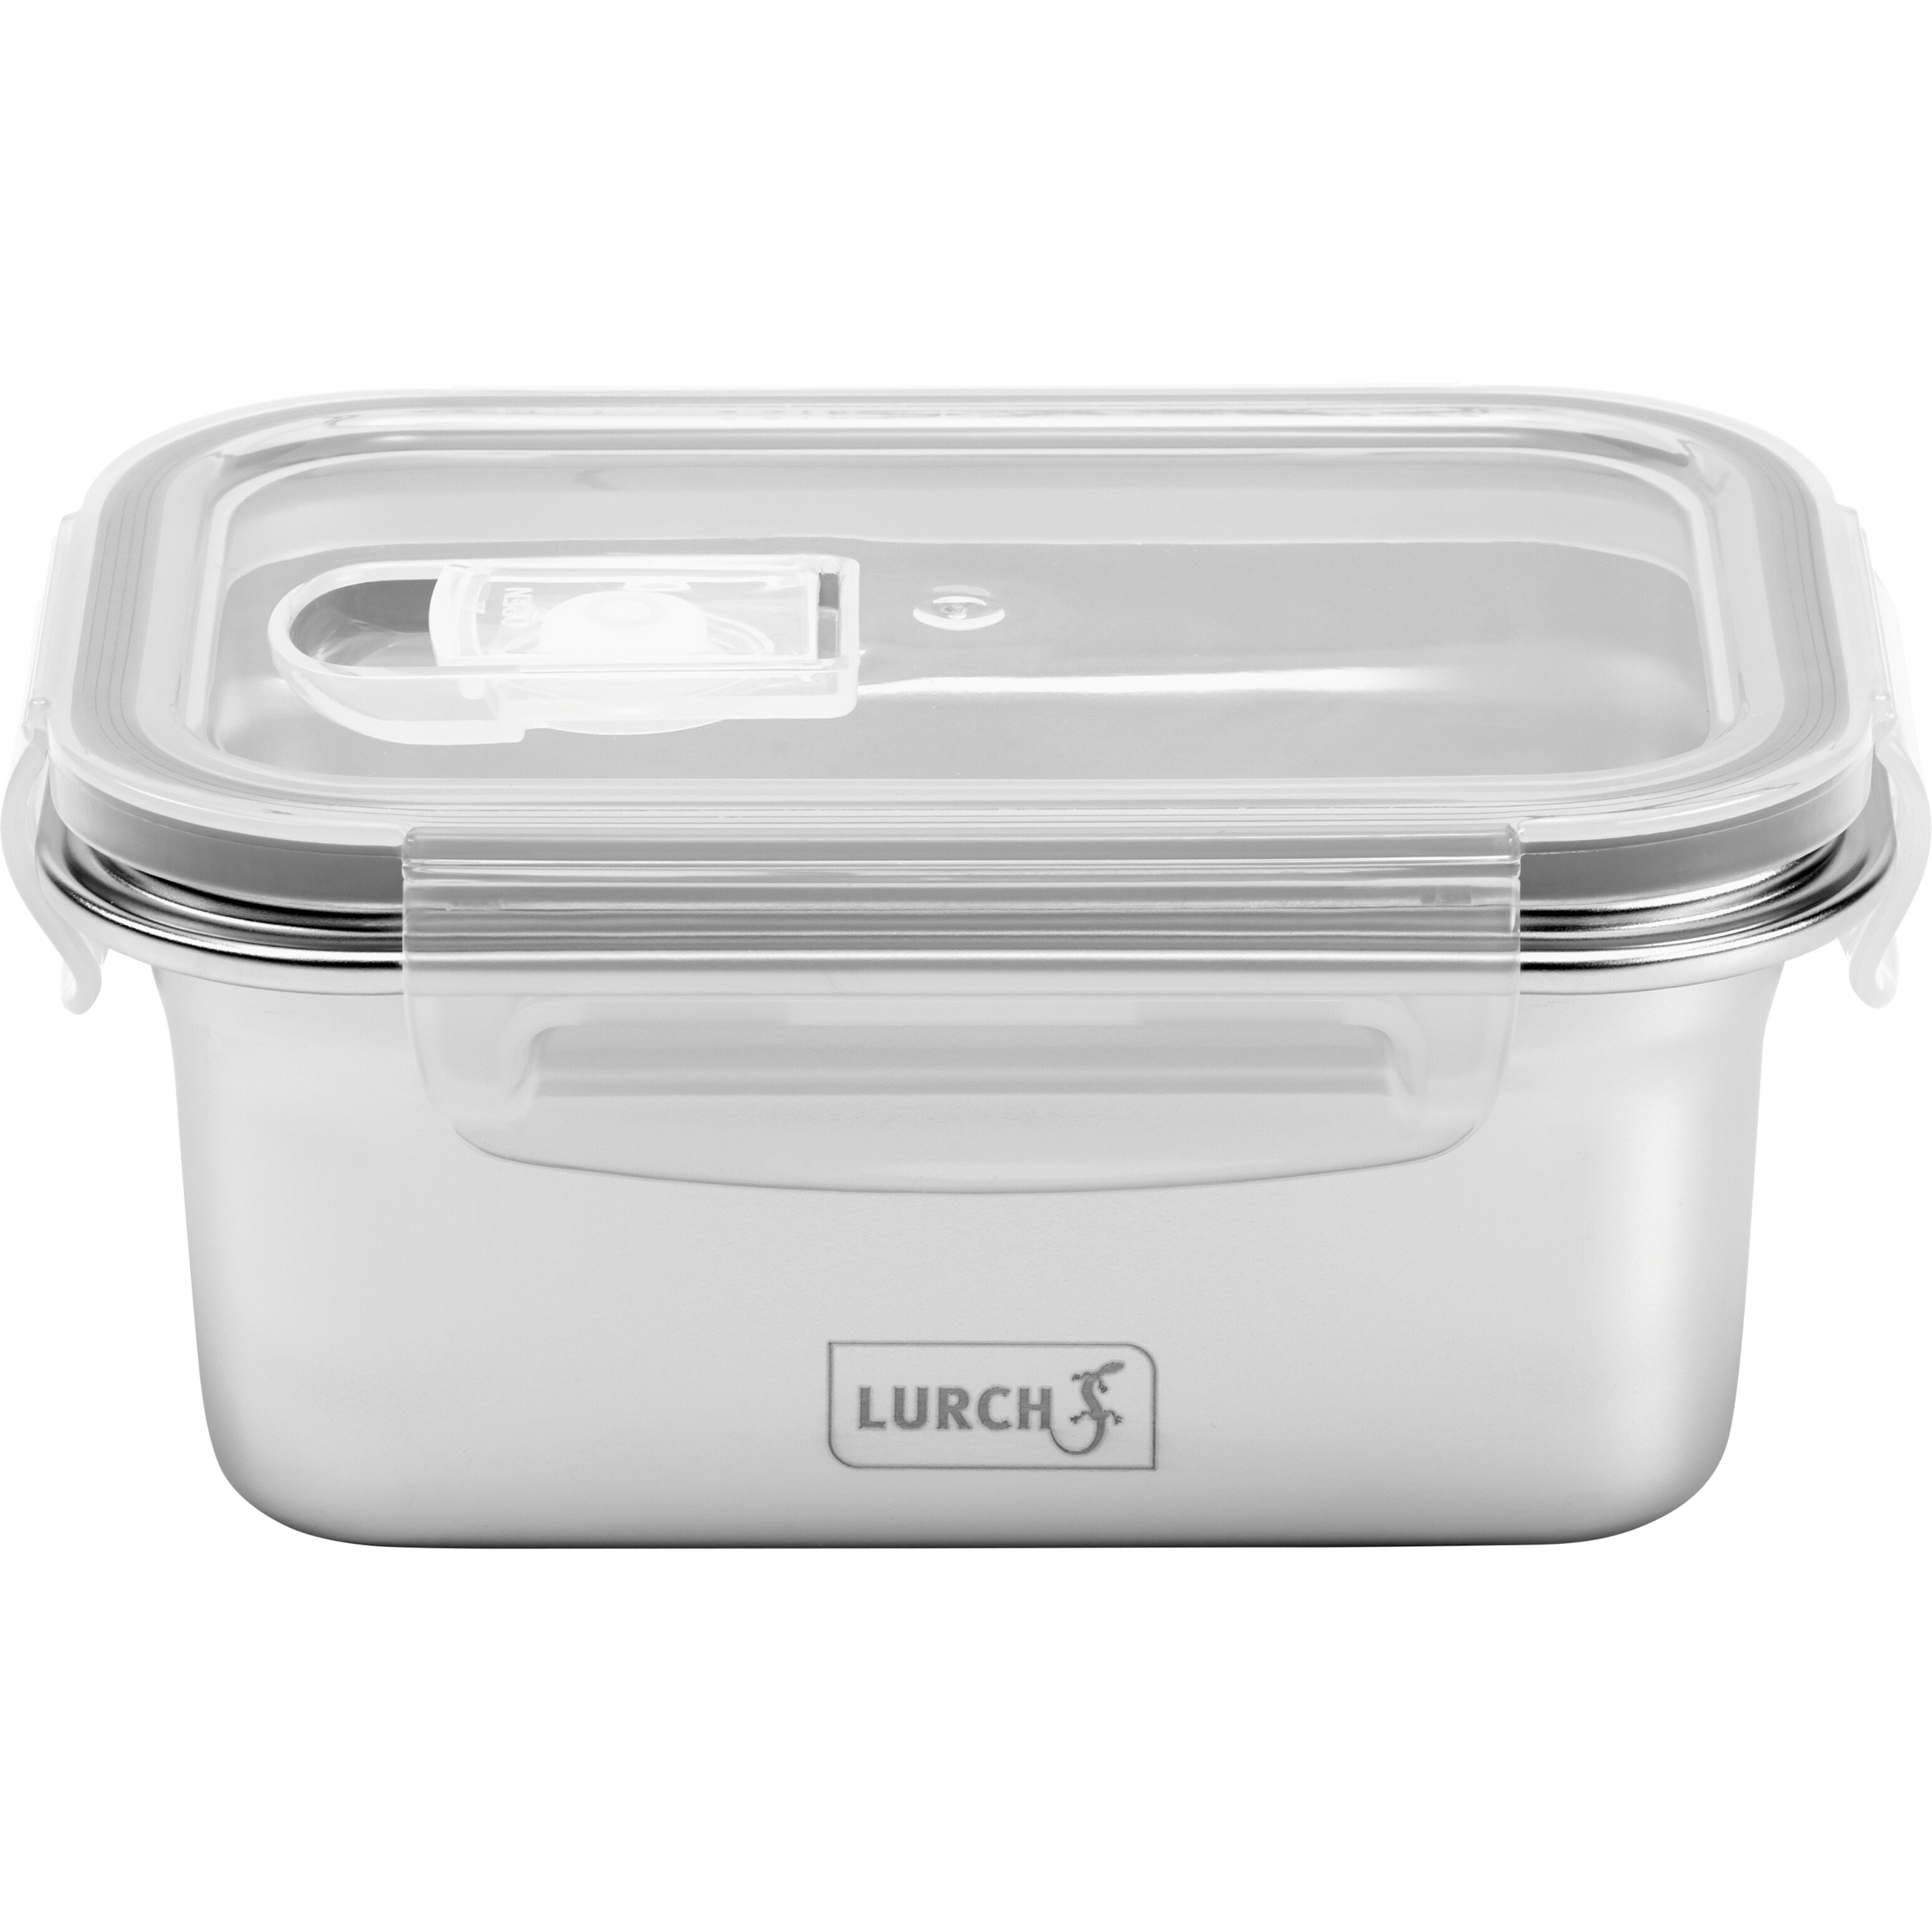 LURCH Lunchbox Edelstahl Frühstücksbox Brotdose Aufbewahrungsbox Safety 0,5 l